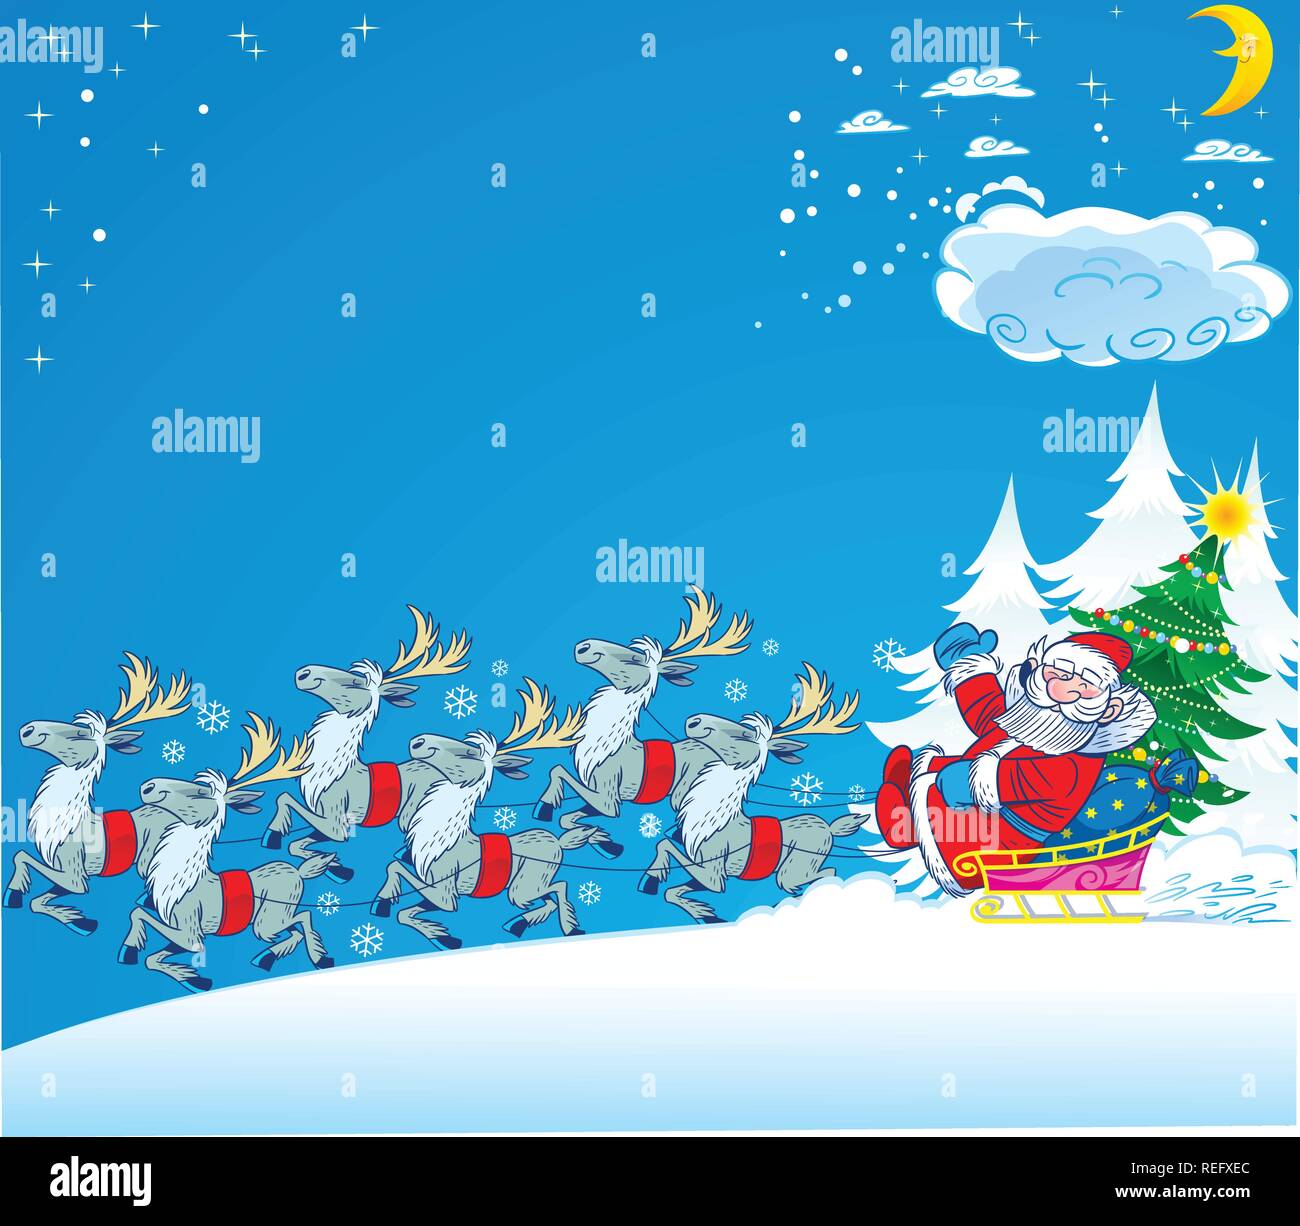 Santa Claus fährt in einem Schlitten durch den Schnee. Neben ihm ein grüner Weihnachtsbaum und Geschenke. Schlittenrennen mehrere Rentiere. Abbildung: in separaten legen Stock Vektor